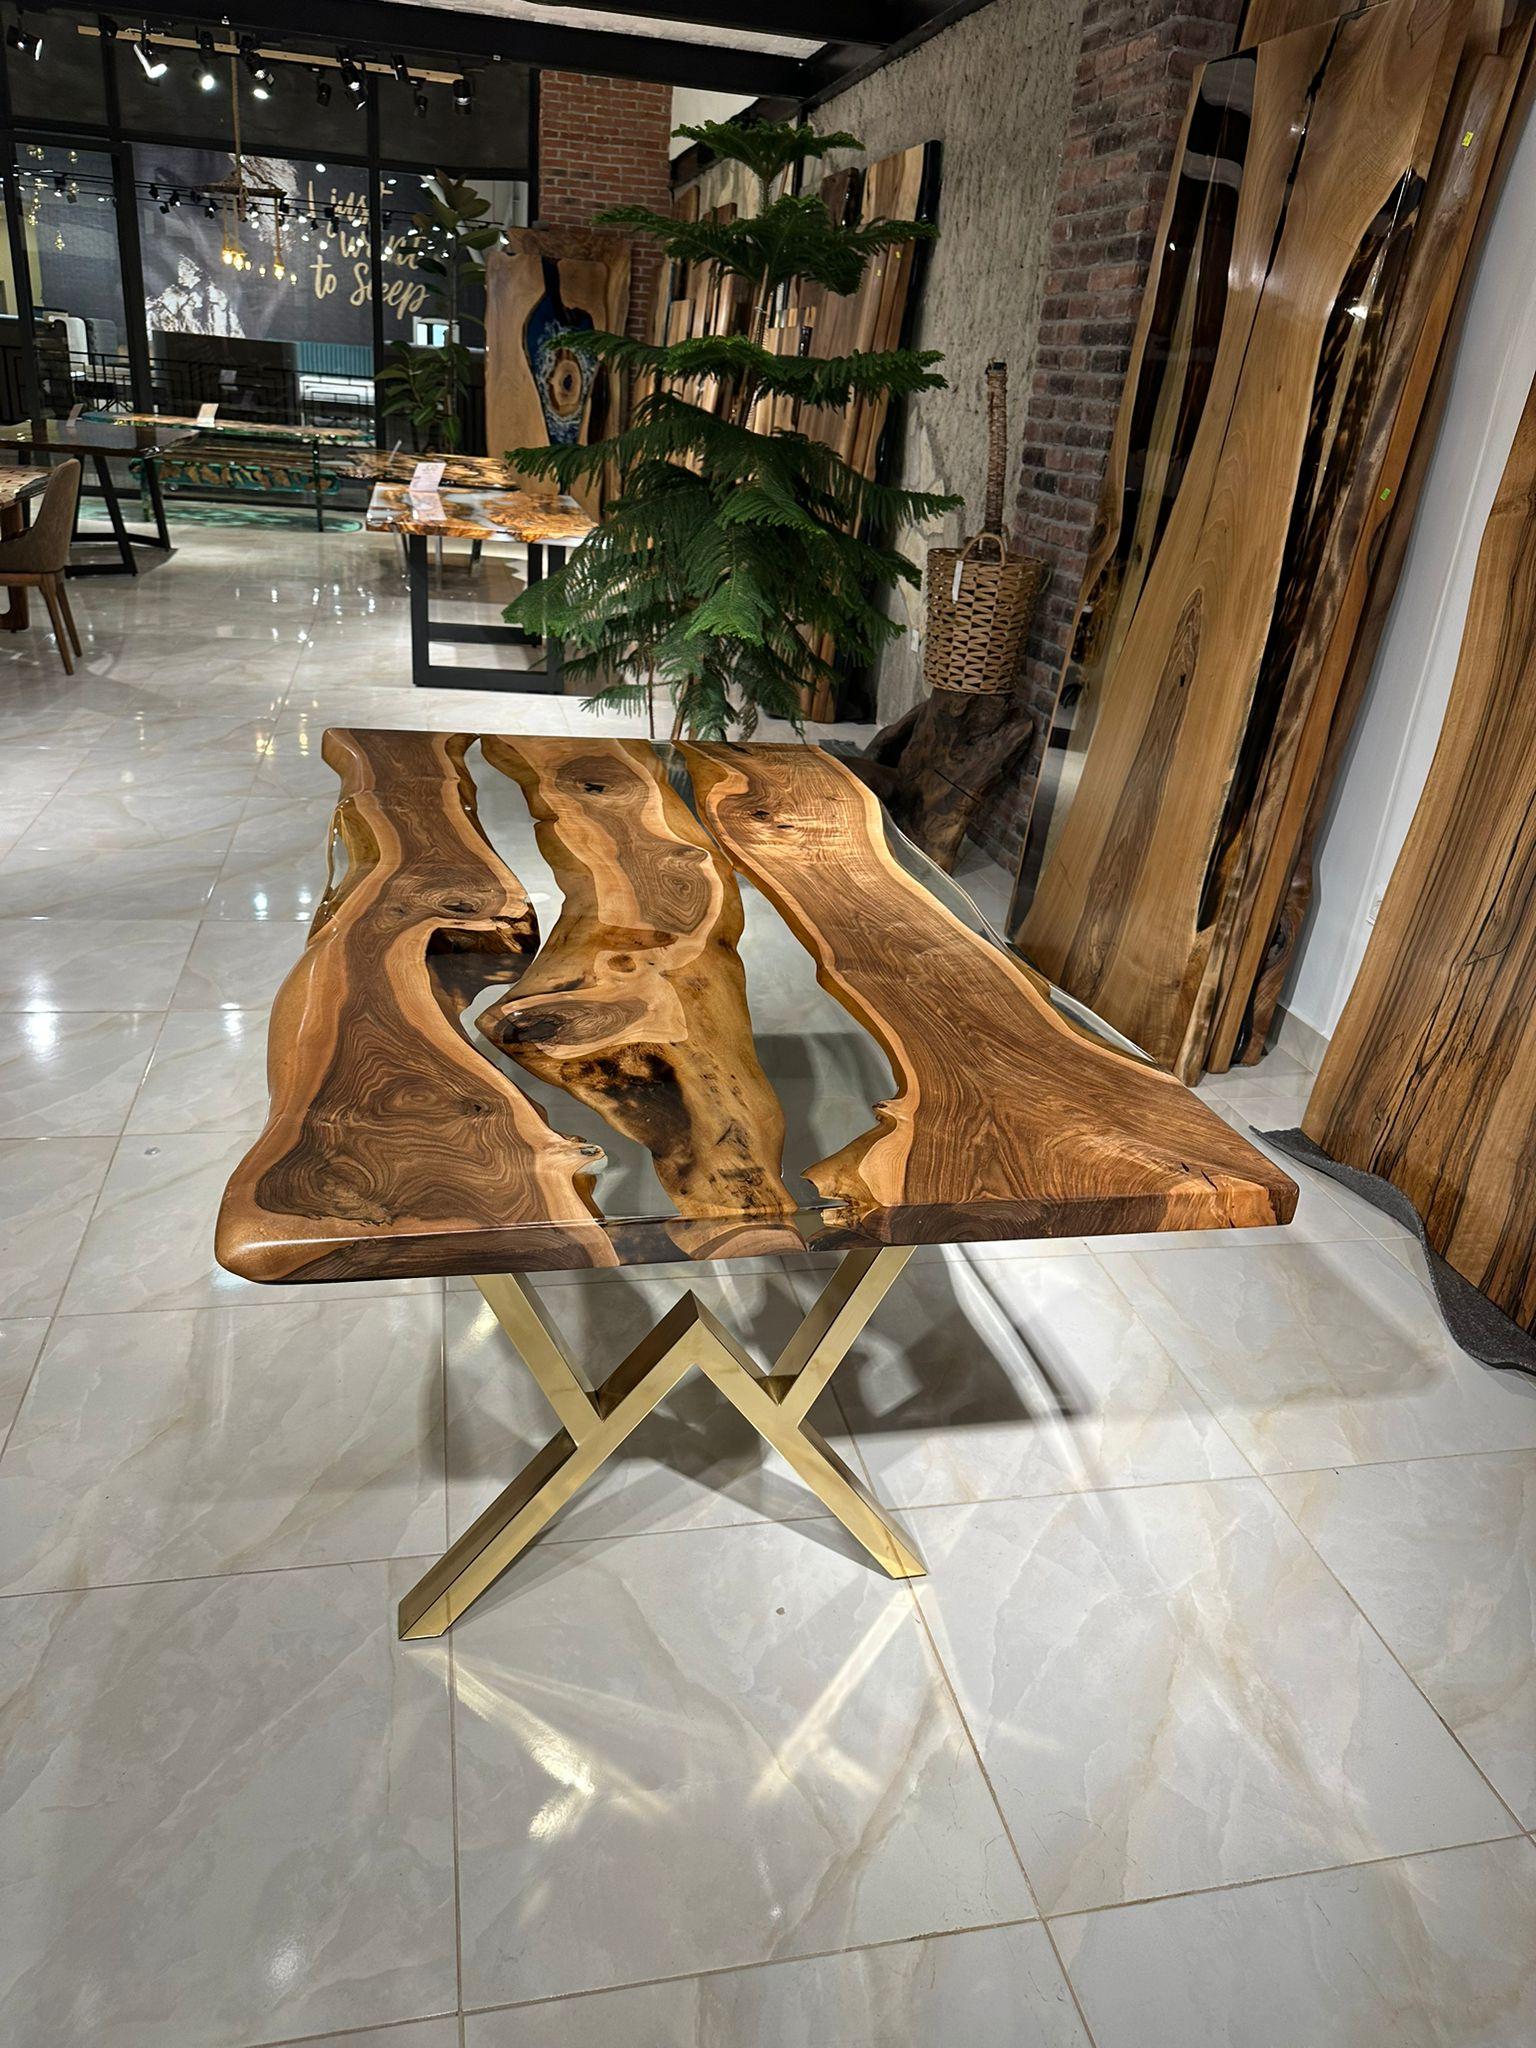 Schwarzer Nussbaum Ultra Clear Epoxidharz Esstisch 

Dieser Tisch ist aus 500 Jahre altem Walnussholz gefertigt. Die Maserung und die Struktur des Holzes beschreiben, wie ein natürliches Walnussholz aussieht.
Er kann als Esstisch oder als